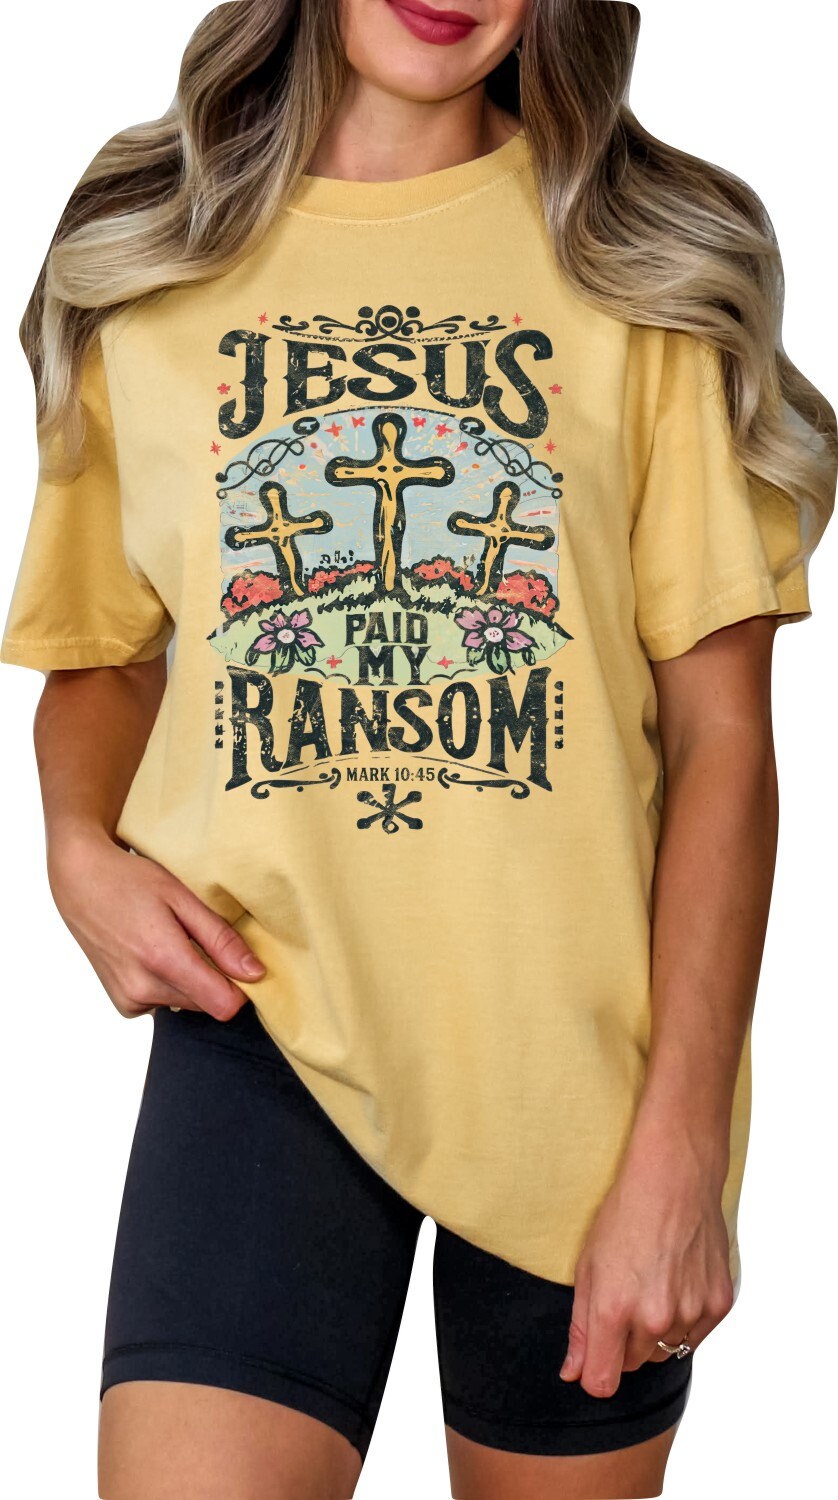 Christian Shirts Religious Tshirt Christian T Shirts Boho Christian Shirt Bible Verse Shirt Easter Shirt Jesus Paid My Ransom Shirt